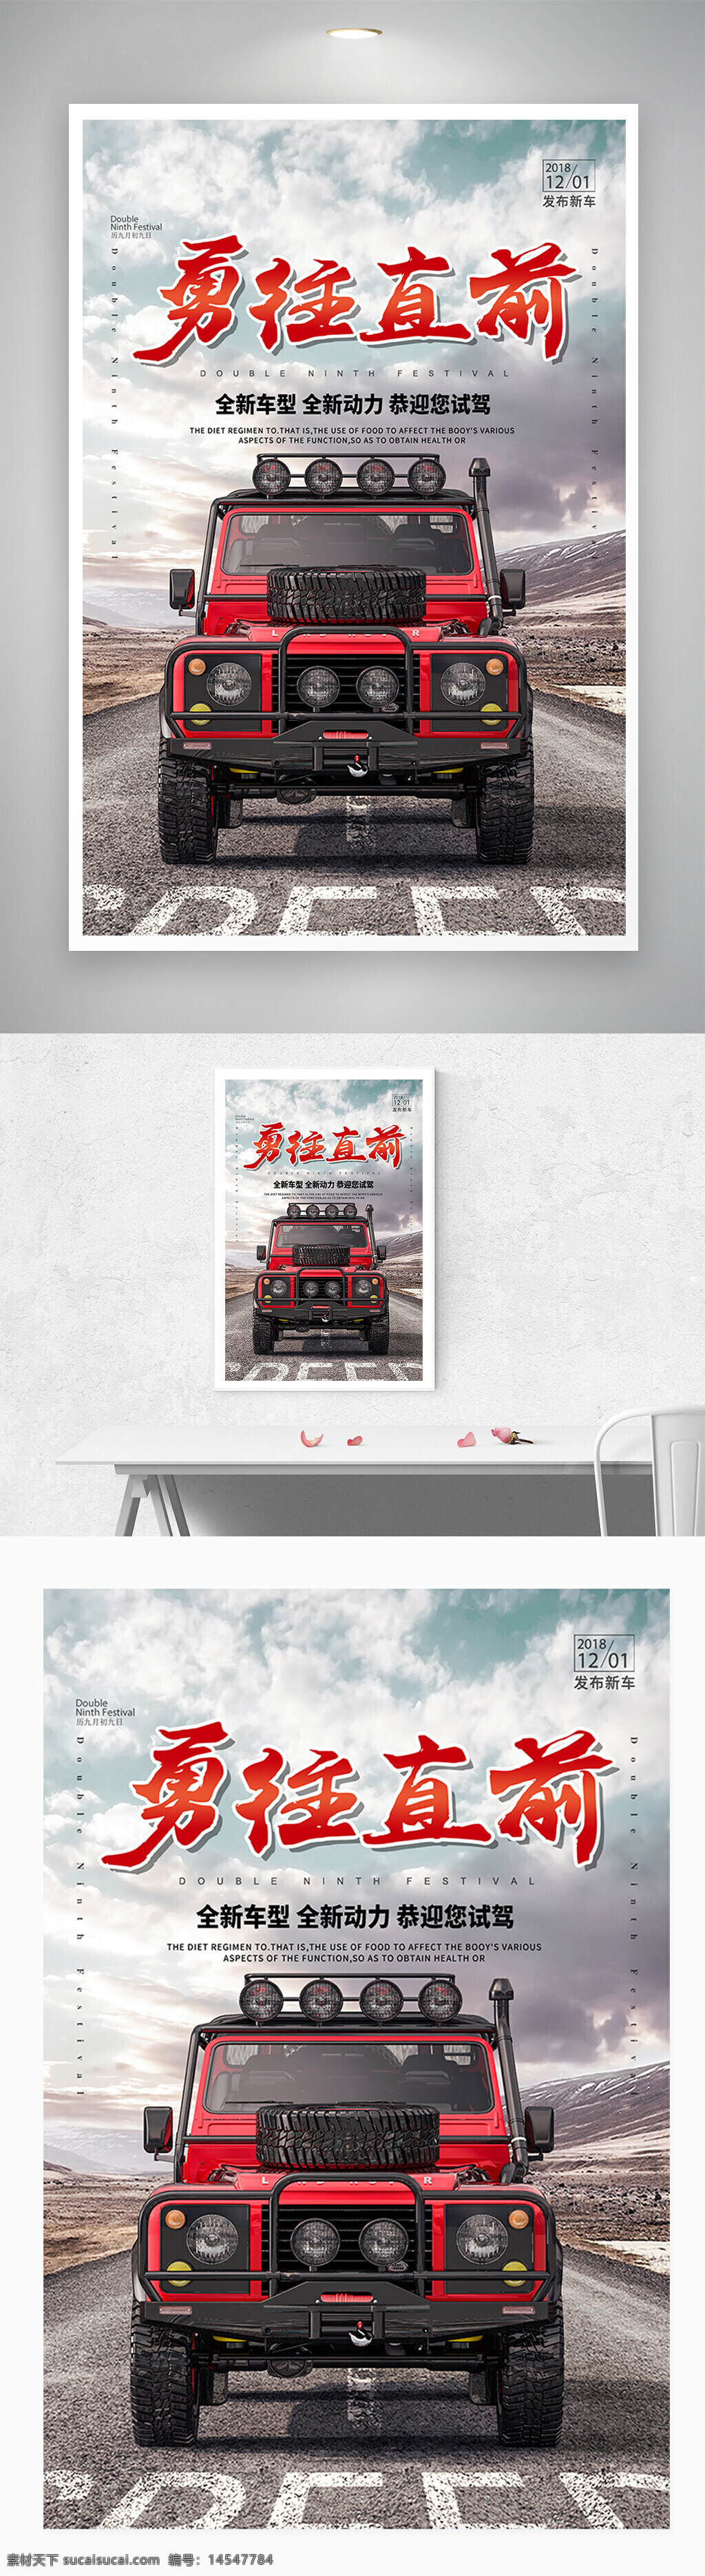 越野车 发售 宣传 车展 汽车 海报